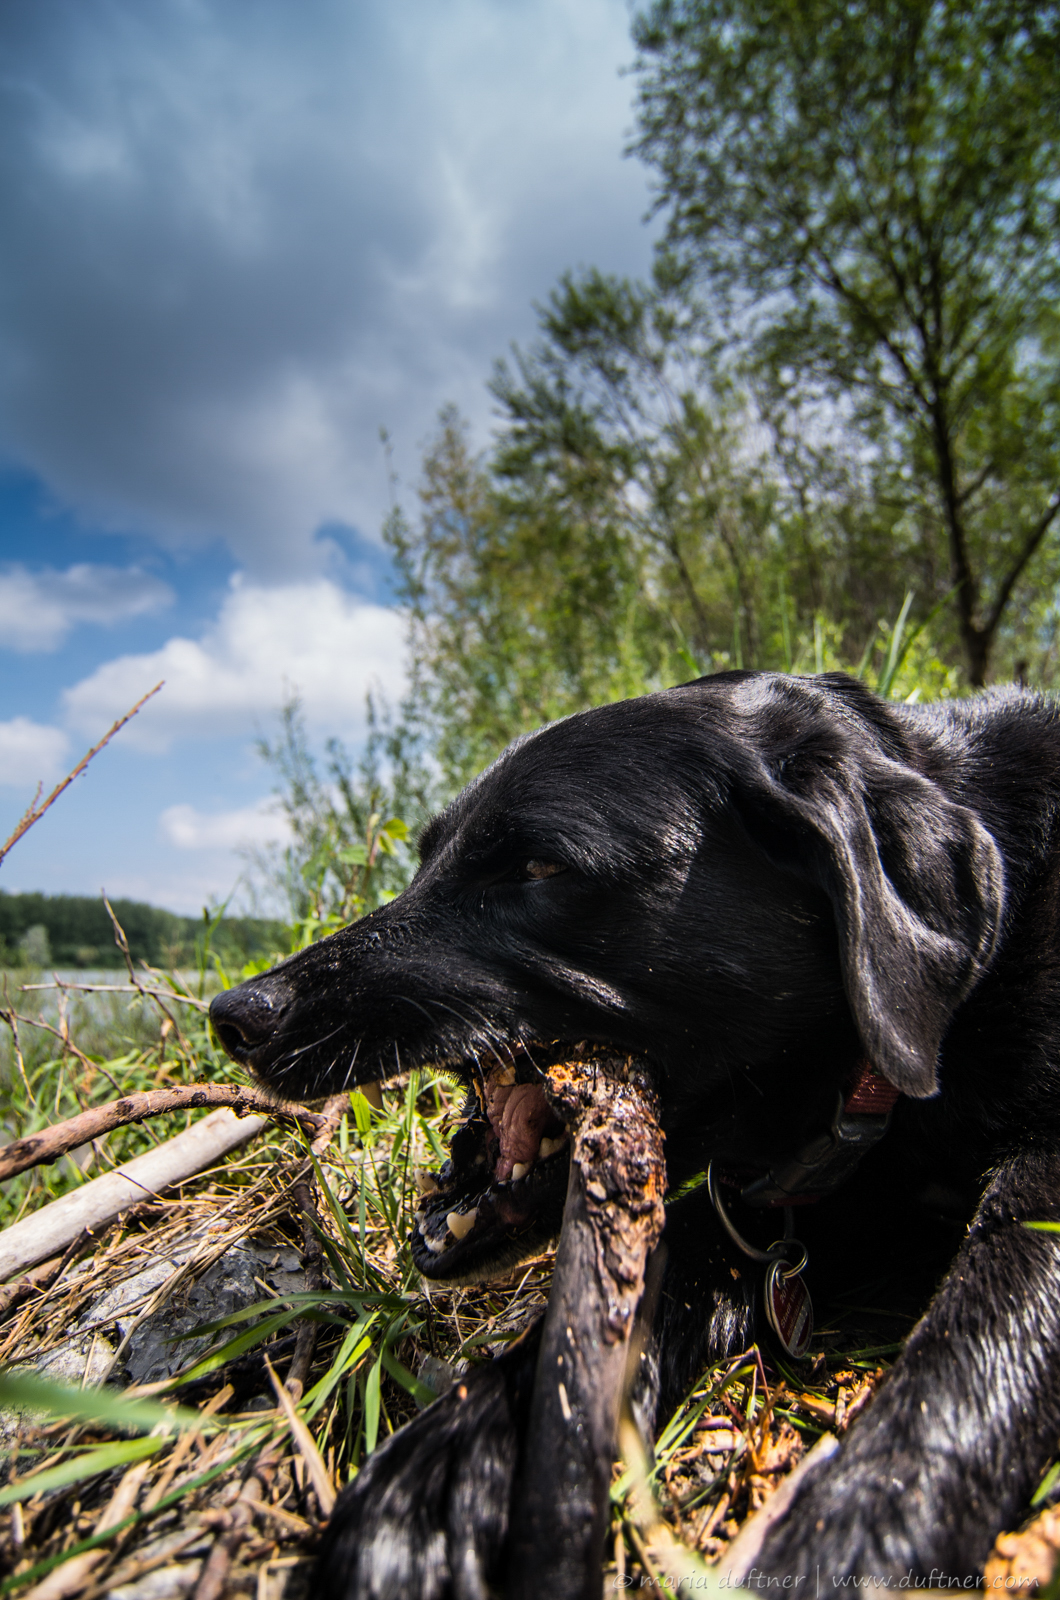 Labrador enjoys stick chewing.